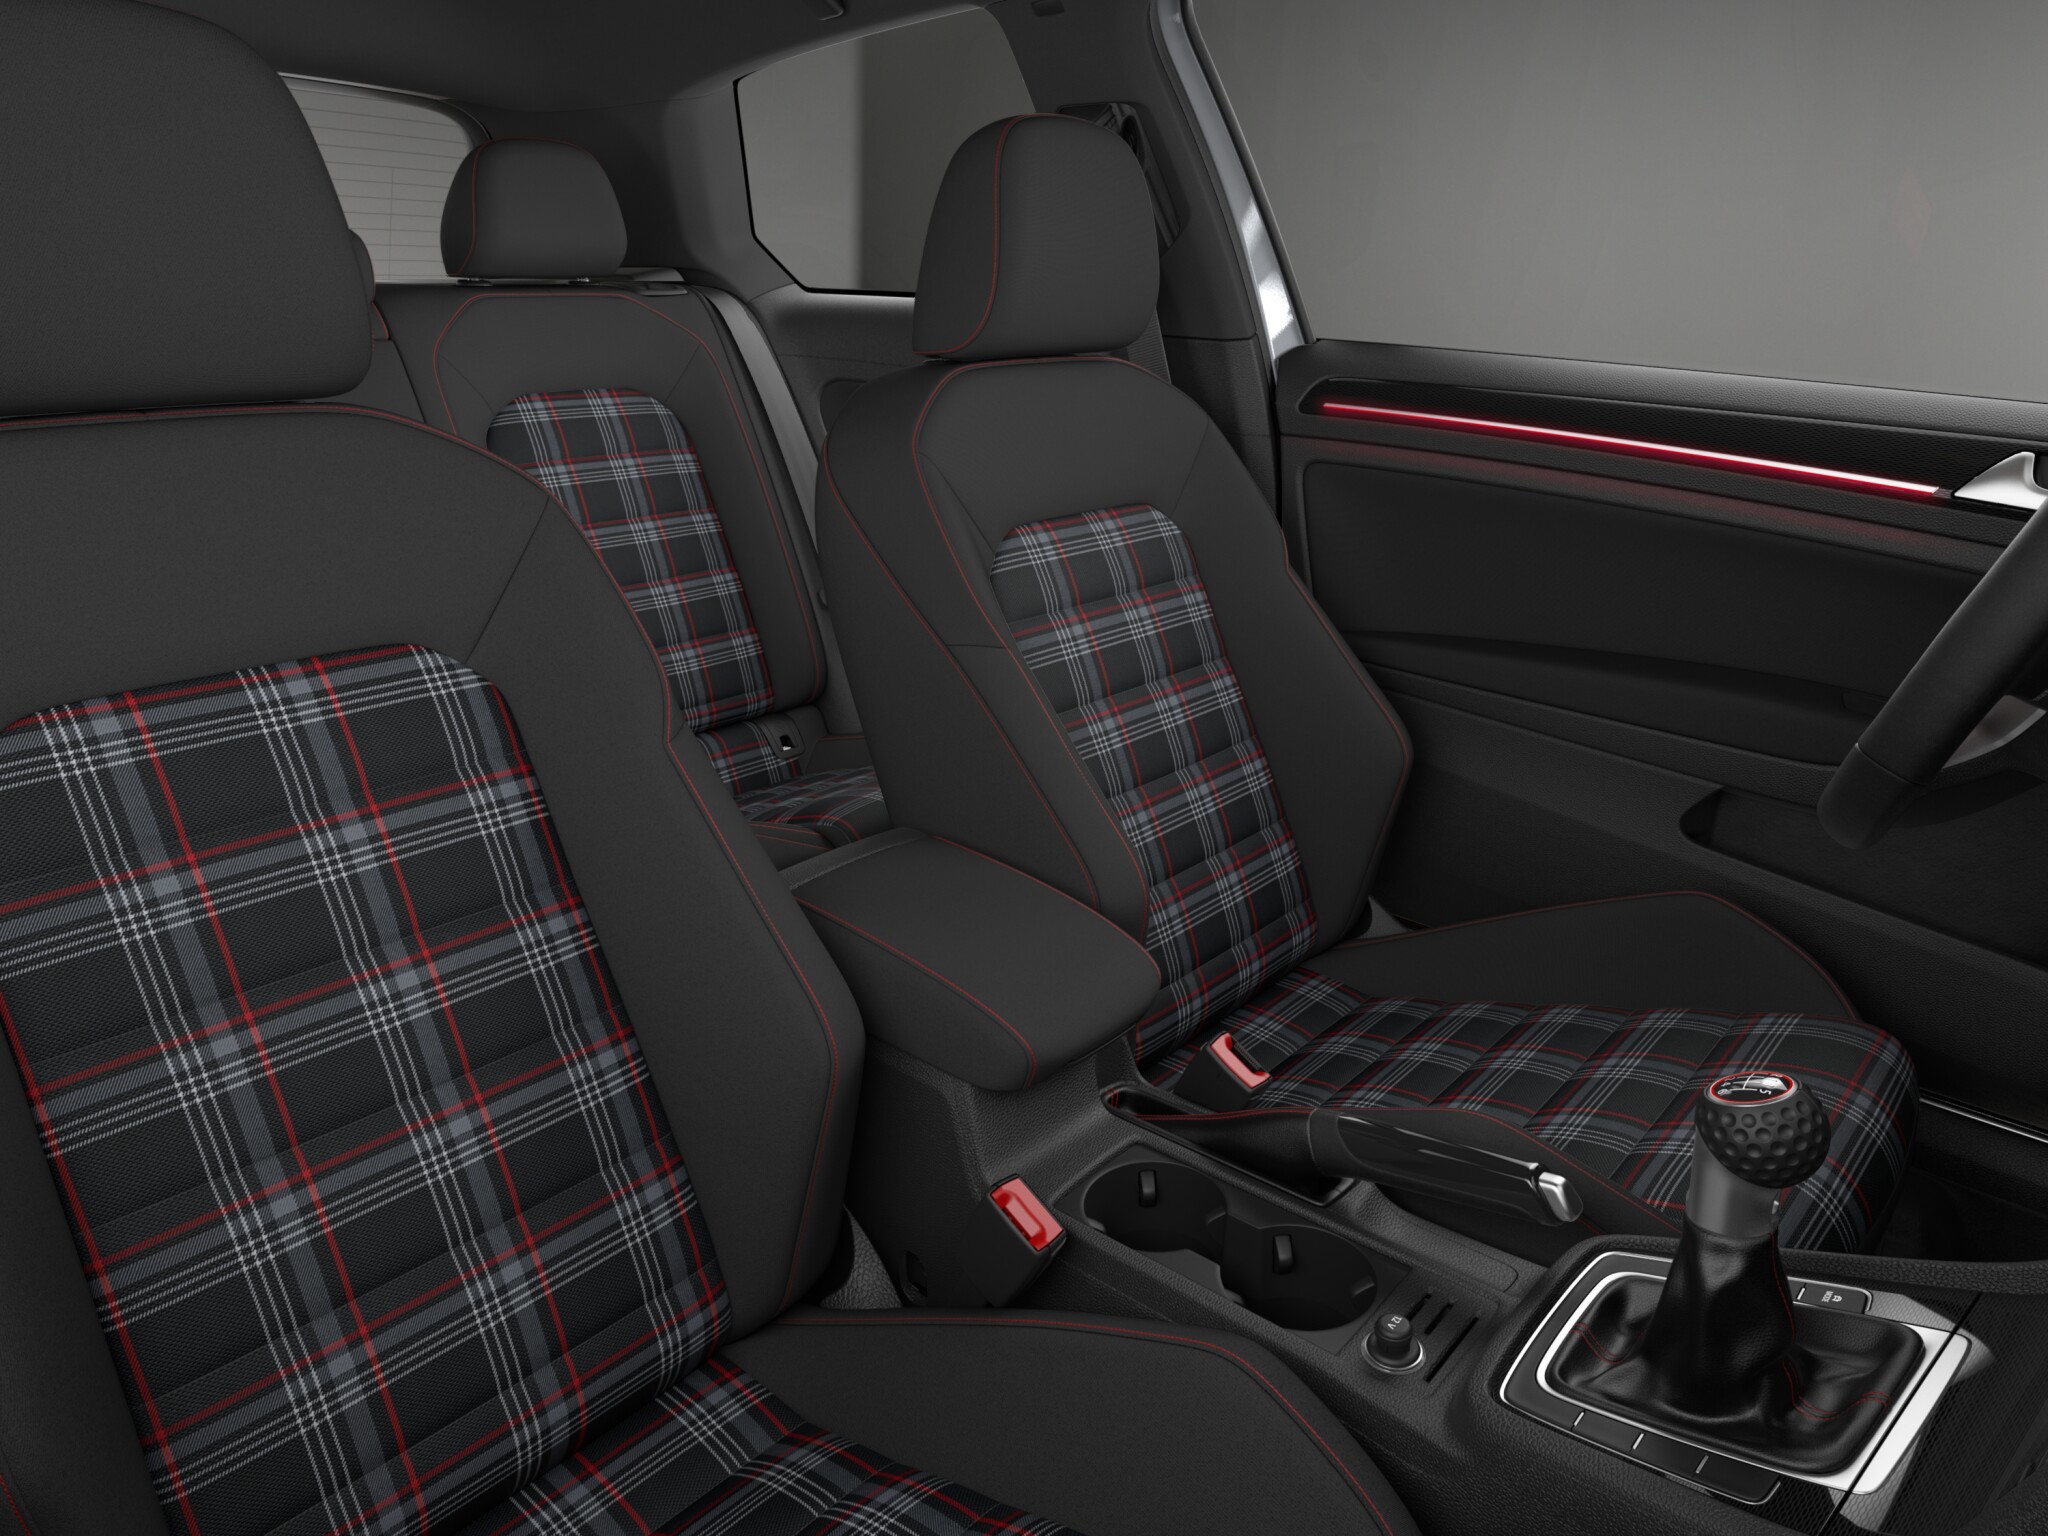 Volkswagen Golf GTI S 2 Door interior front seat view